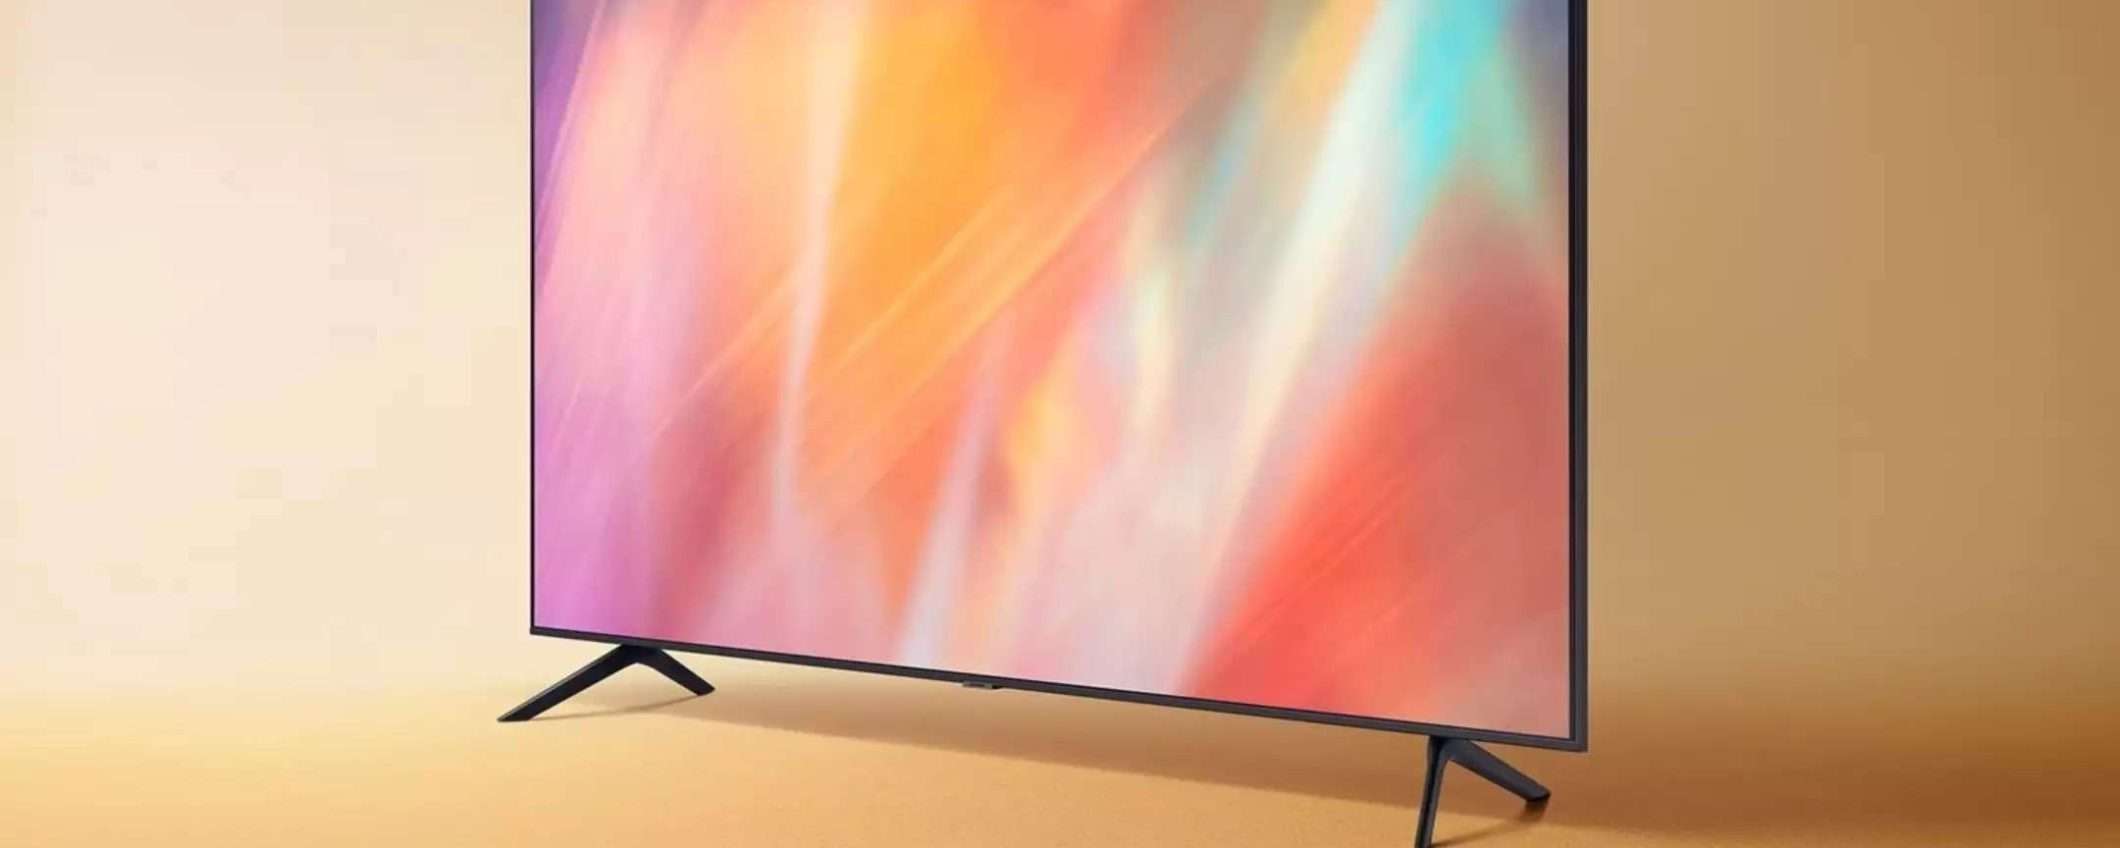 Smart TV Samsung da 50 pollici in offerta a 365€ su Amazon: è un VERO AFFARE